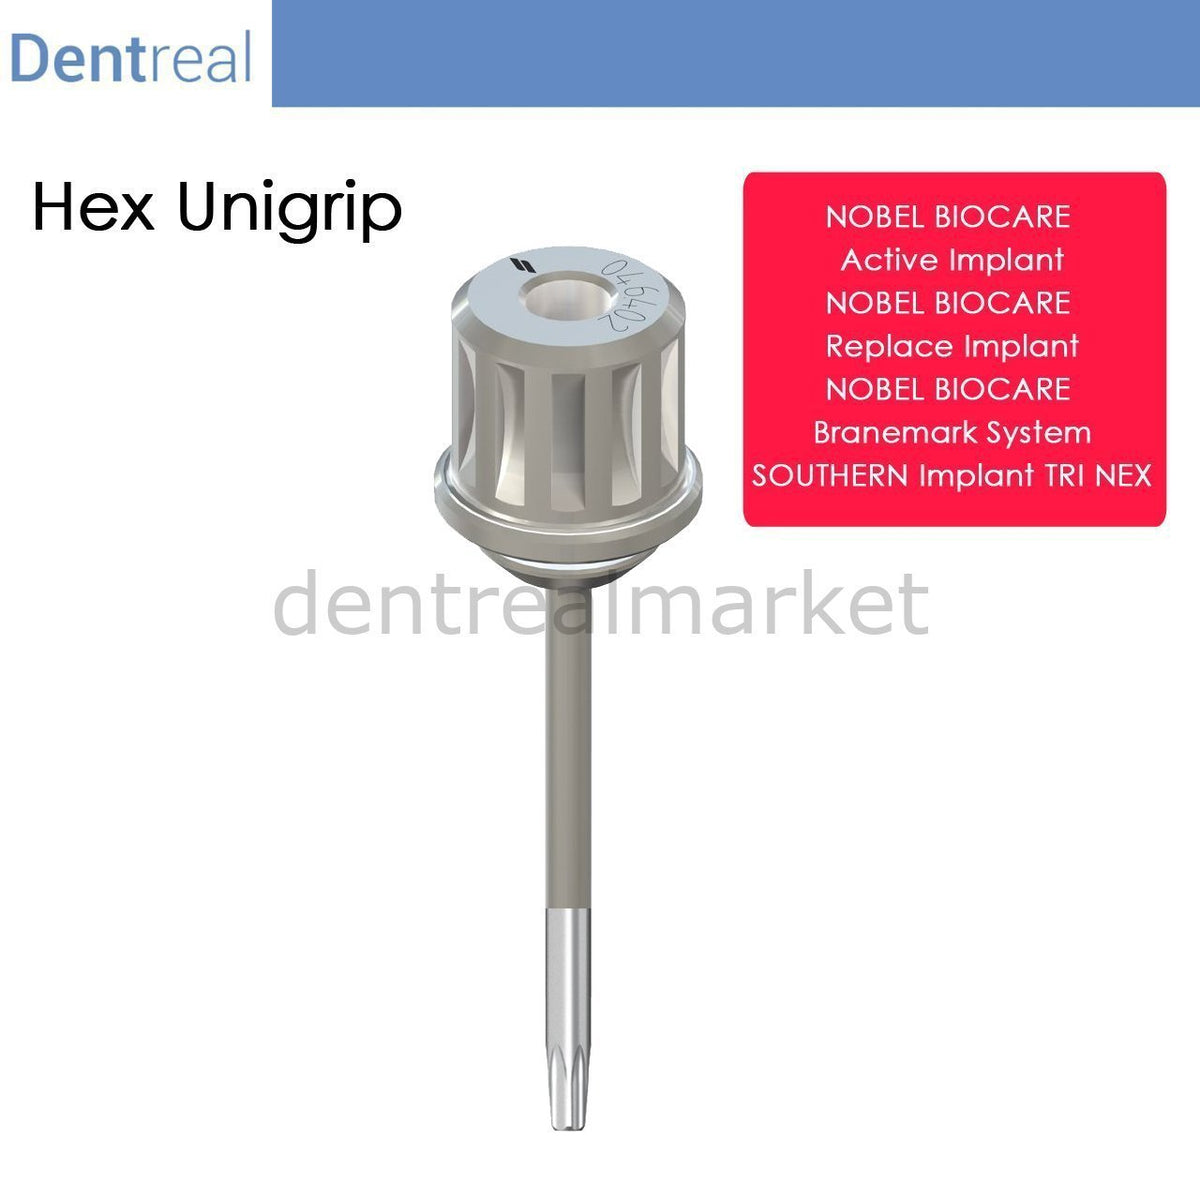 DentrealStore - Dentreal Screwdriver for Nobel Biocare - Unigrip Screwdriver - NtorX